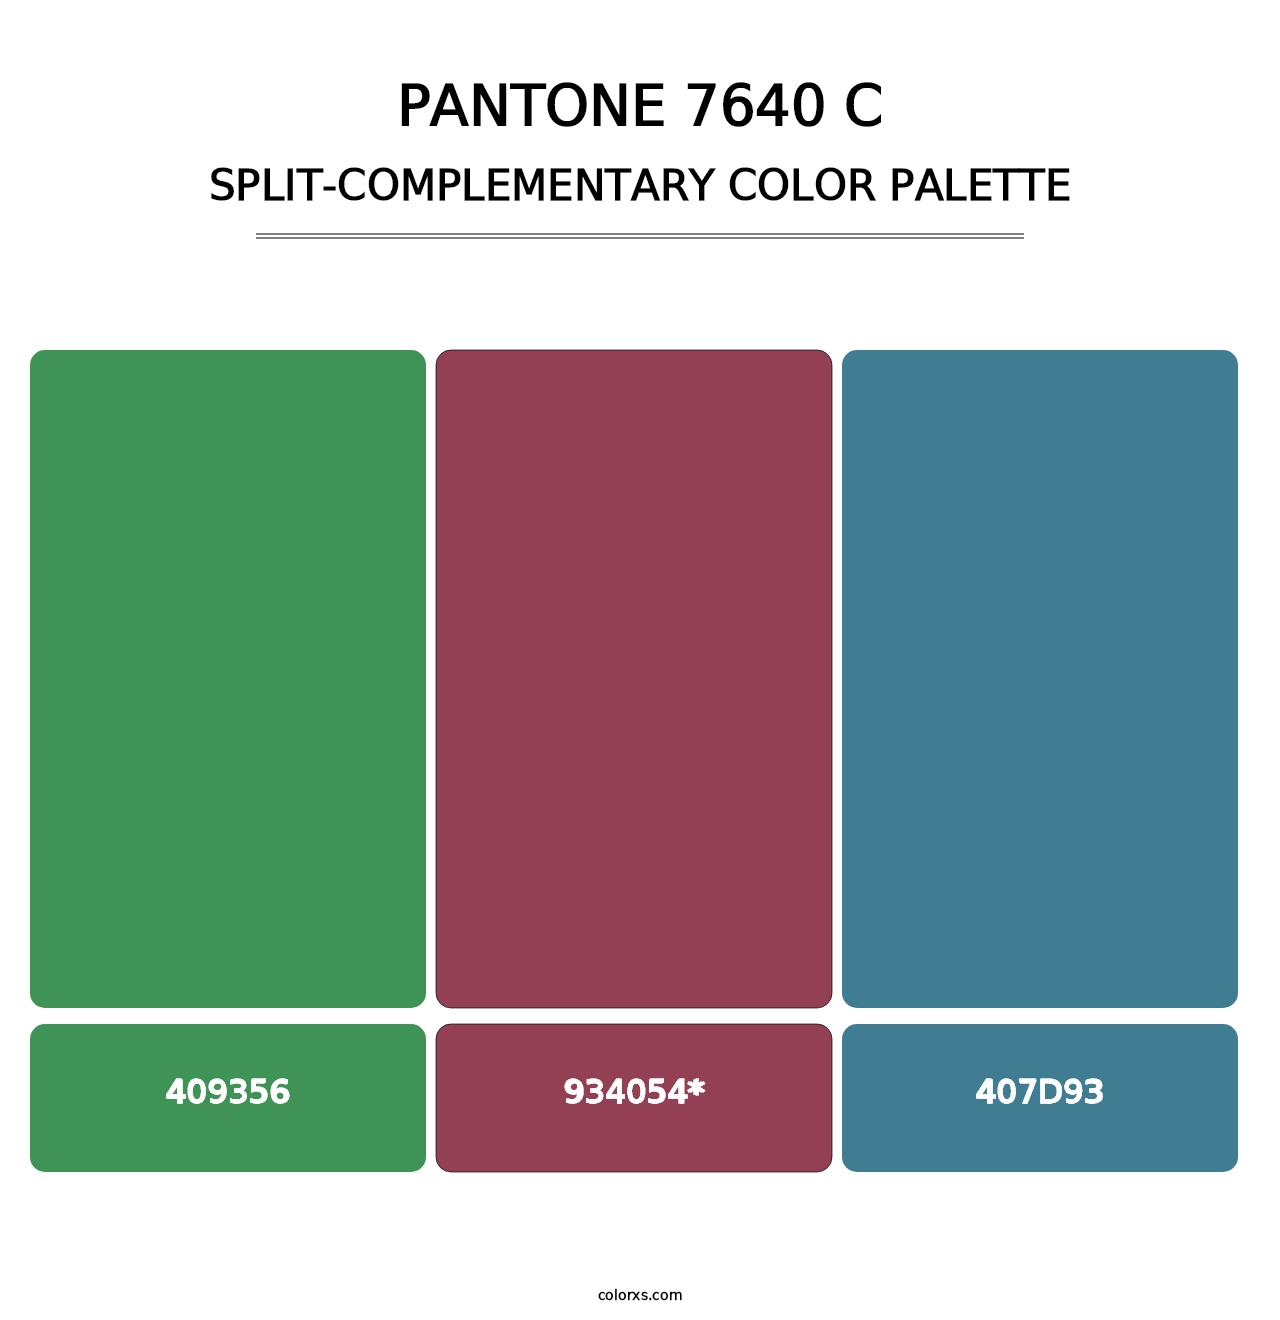 PANTONE 7640 C - Split-Complementary Color Palette